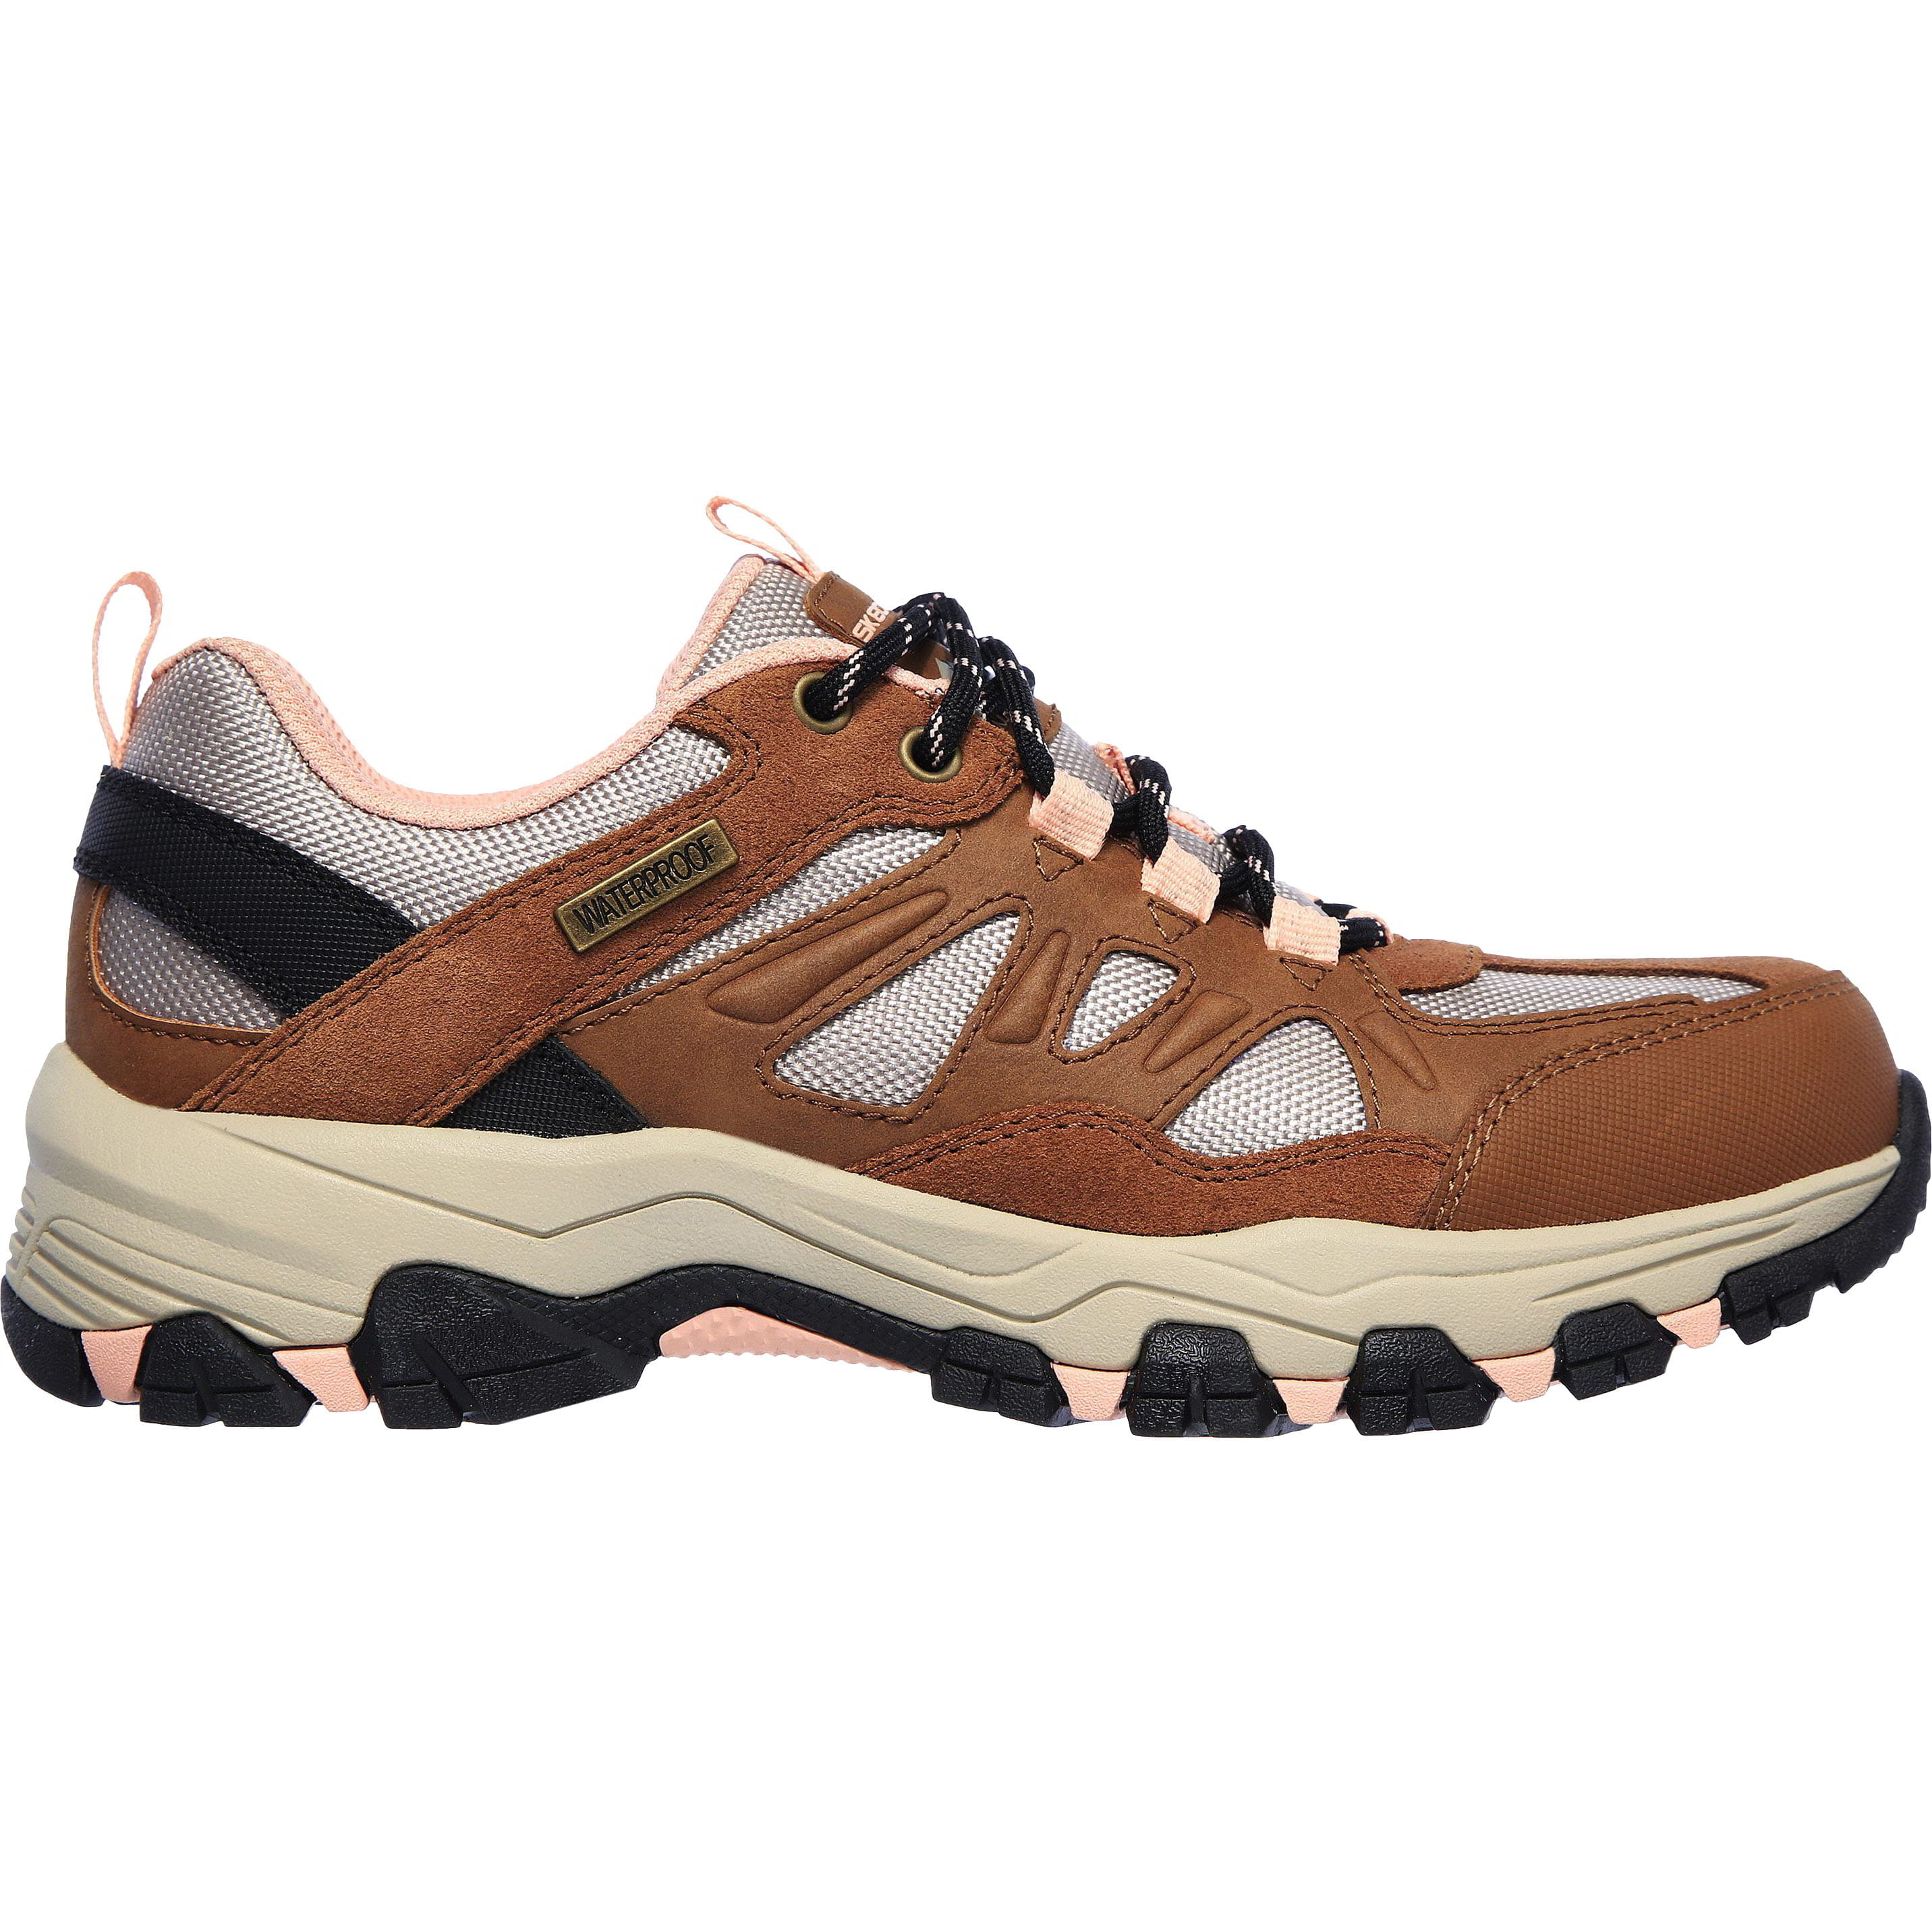 Skechers Womens Selment West Highland Waterproof Walking Shoes Trainers - UK 4.5 Brown 2951